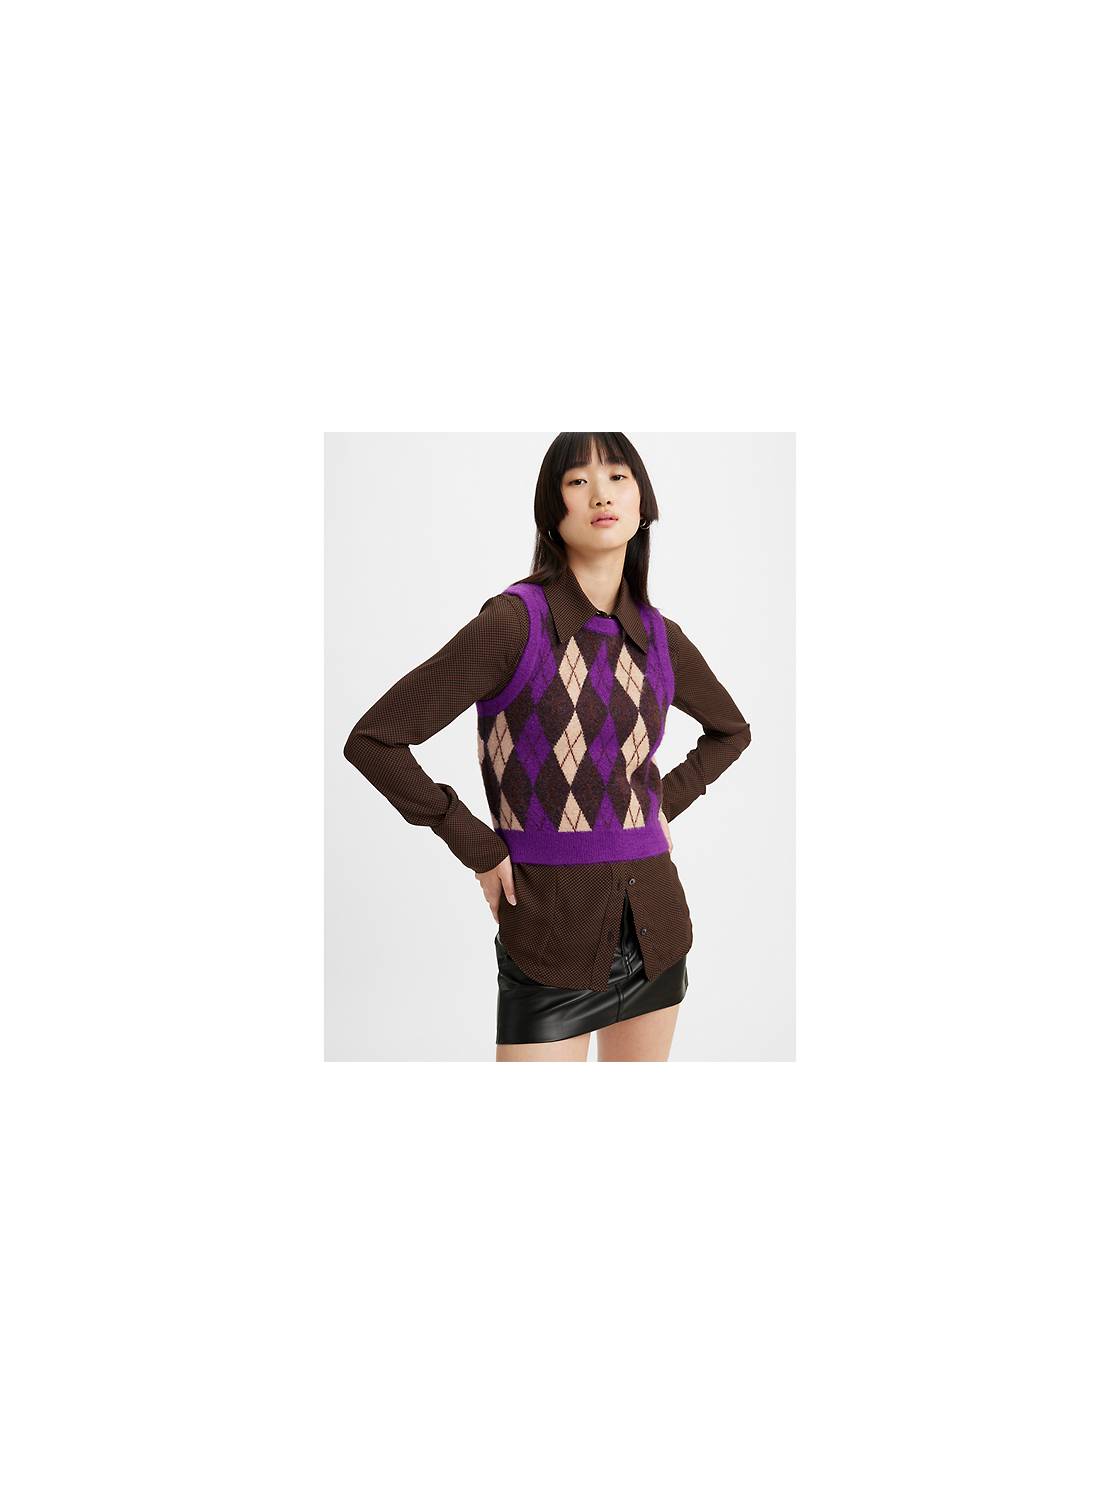 Best Deal for Graphic Crewneck Sweatshirt Sweater Vest Women Cool